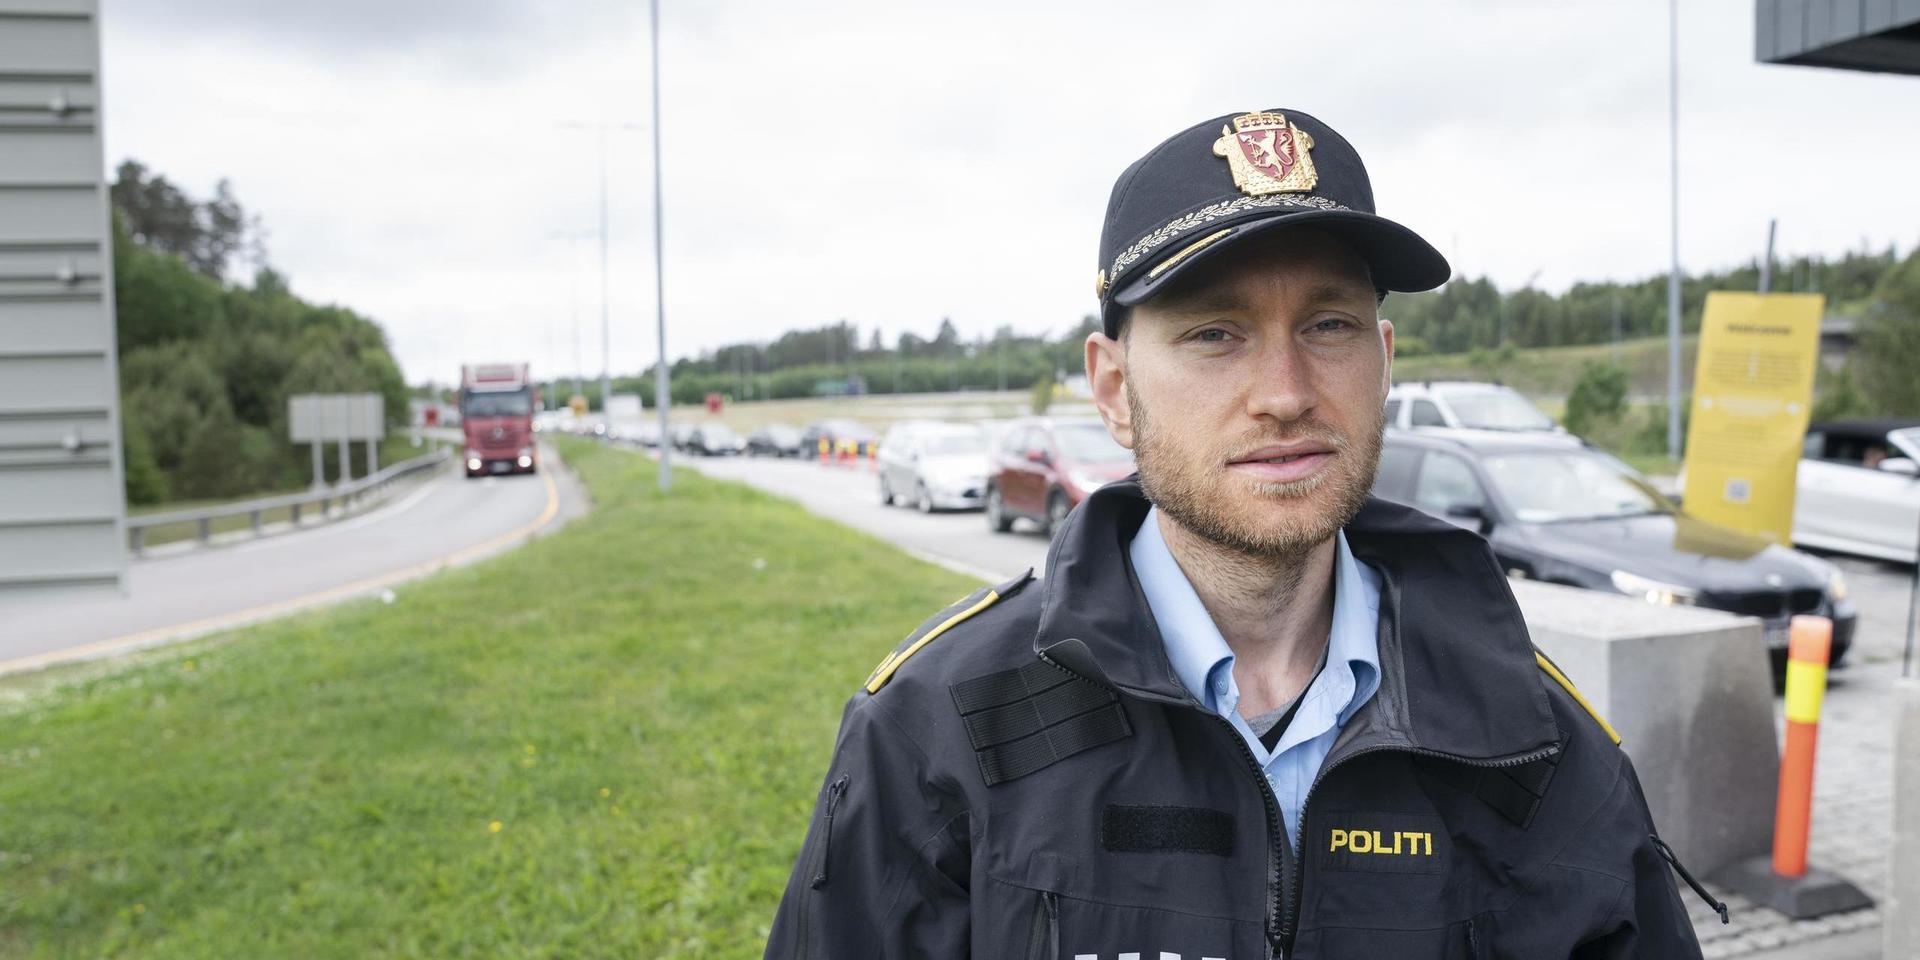 Trycket kommer att öka samtidigt som vi har all normal trafik. Det här kommer på toppen, säger Stian Rasmushaugen, polis vid tullstationen i Svinesund.